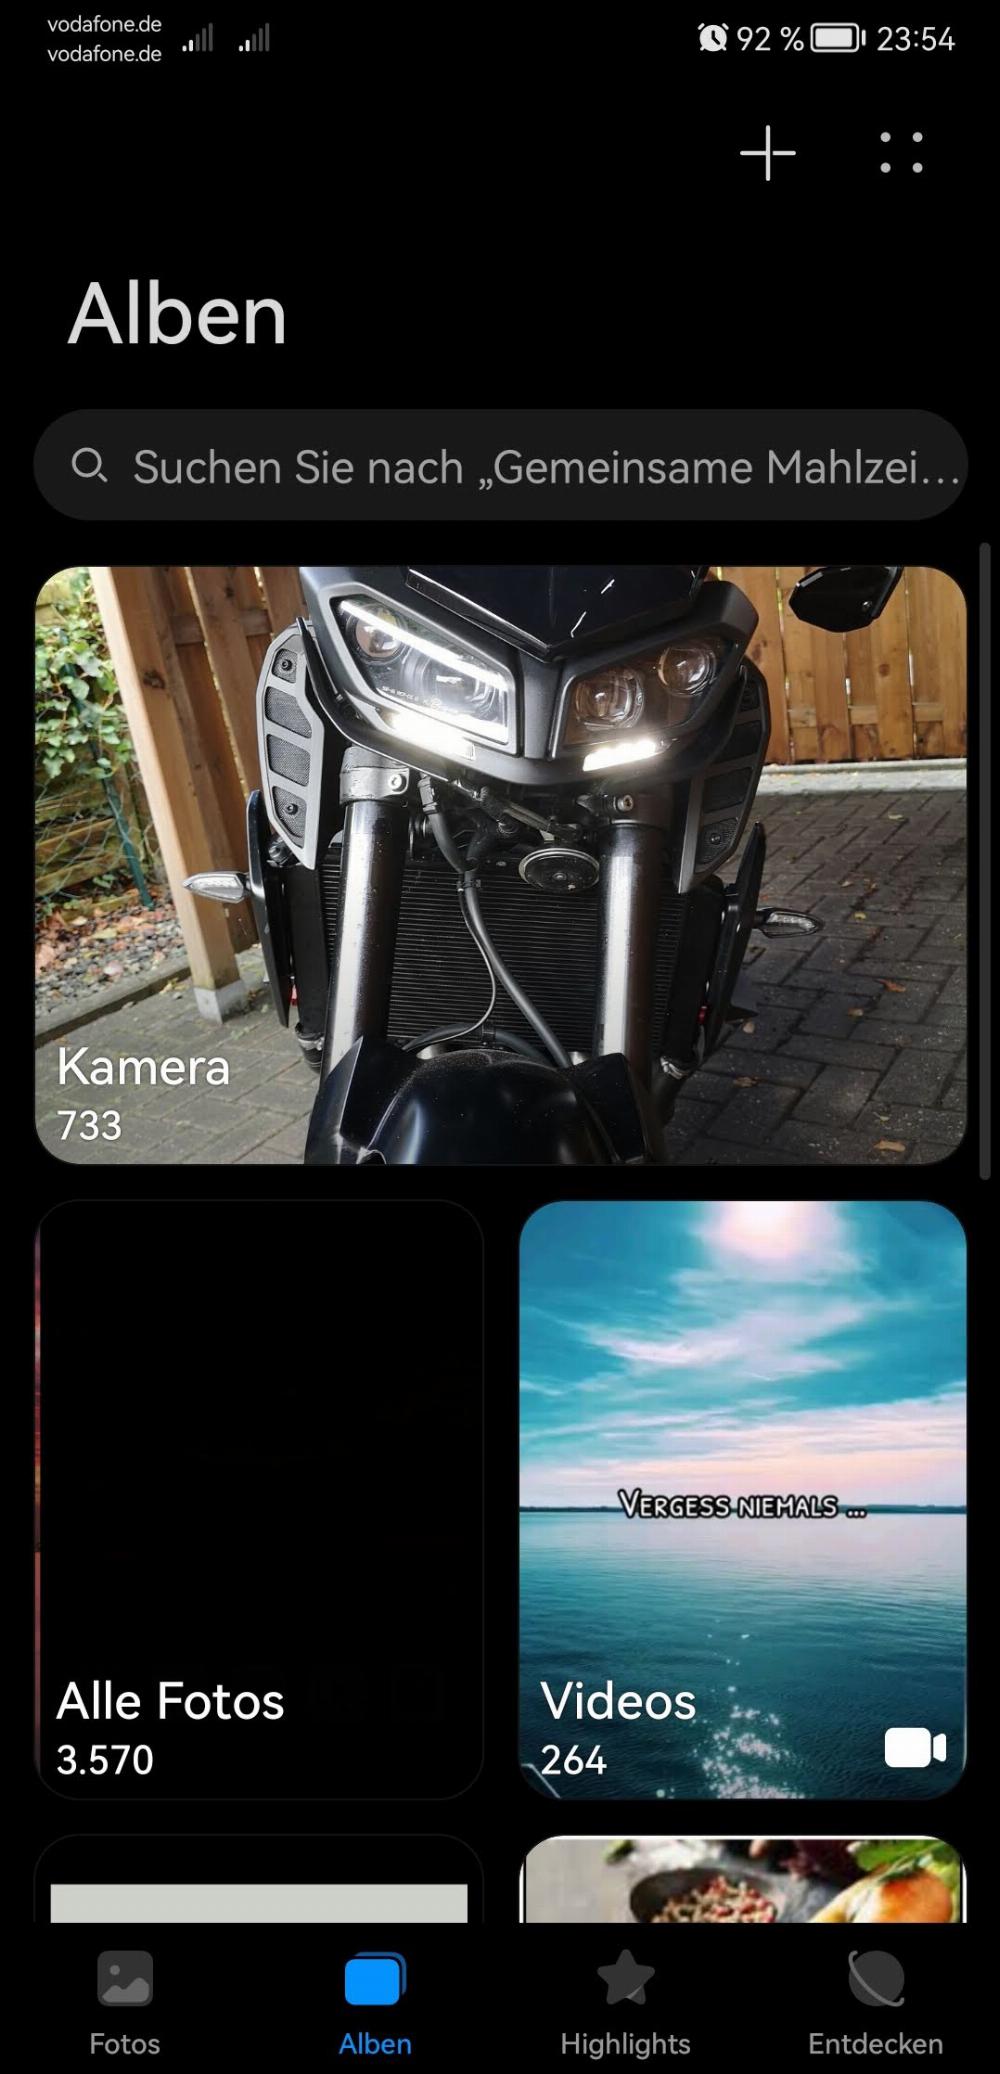 Motorrad verkaufen Yamaha MT 09 Ankauf